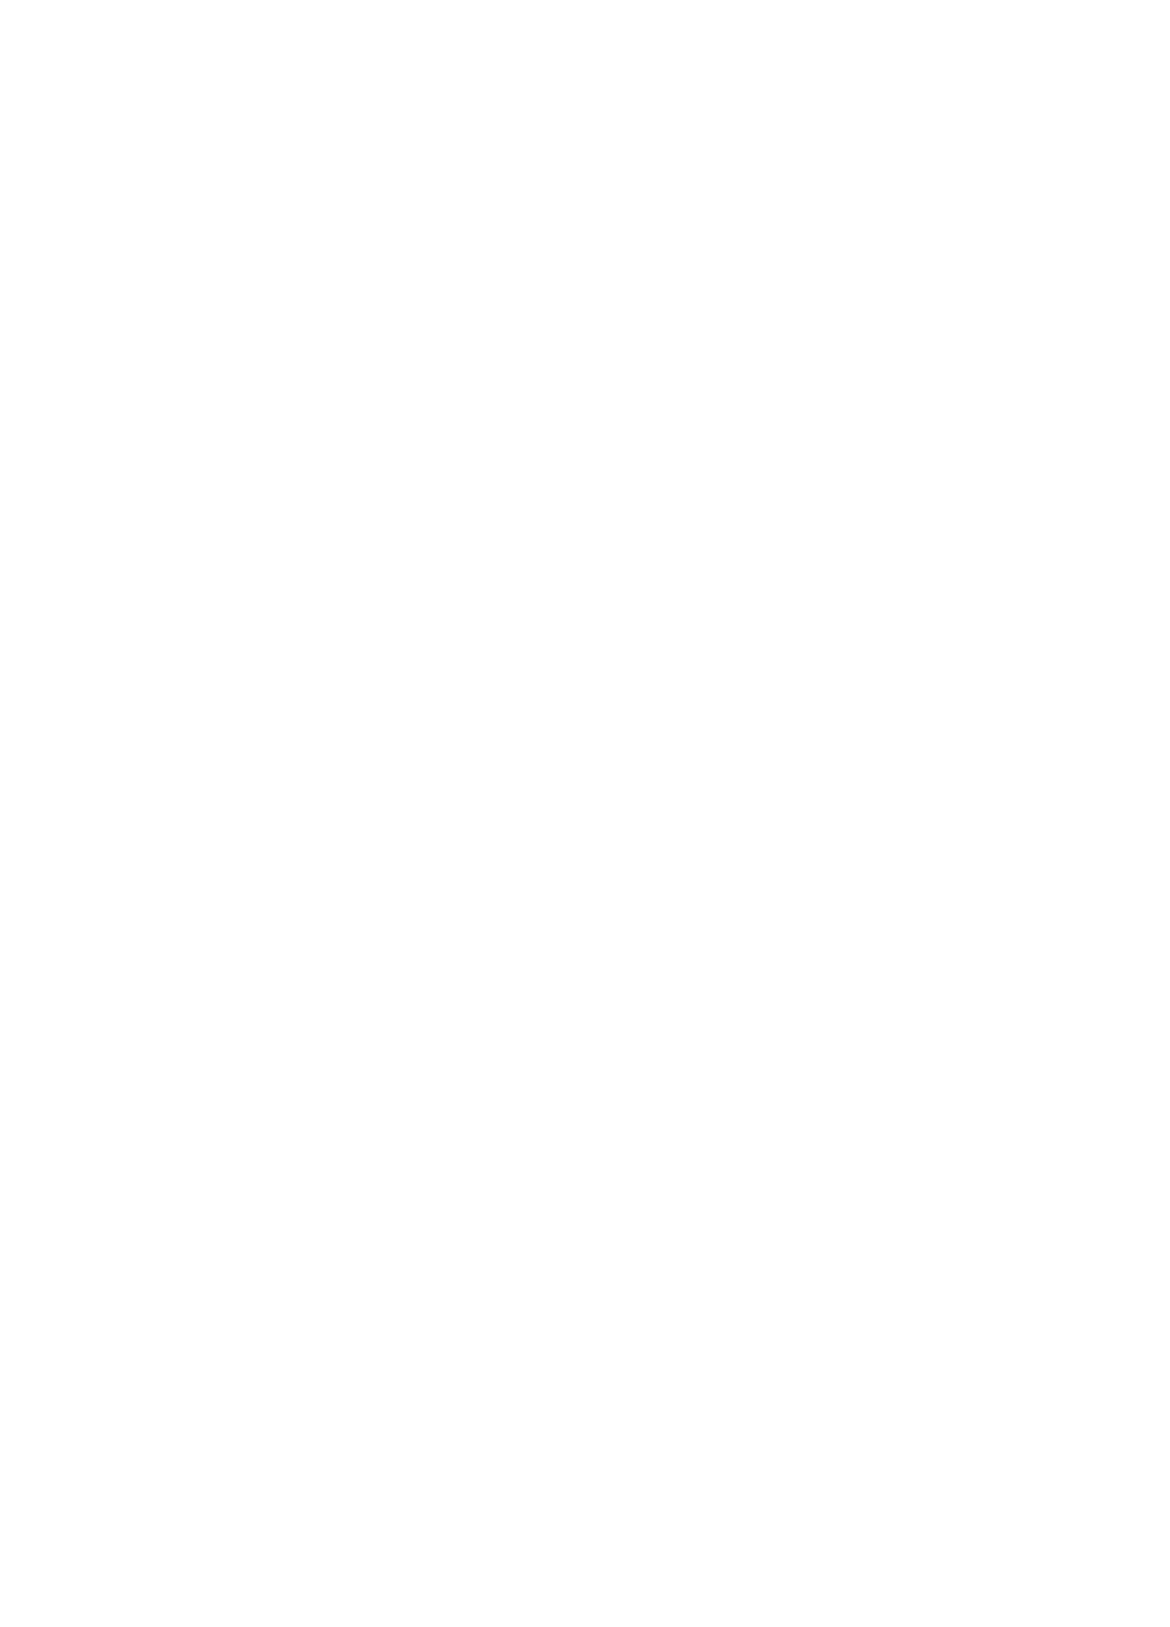 Adobe ', opens in new window'